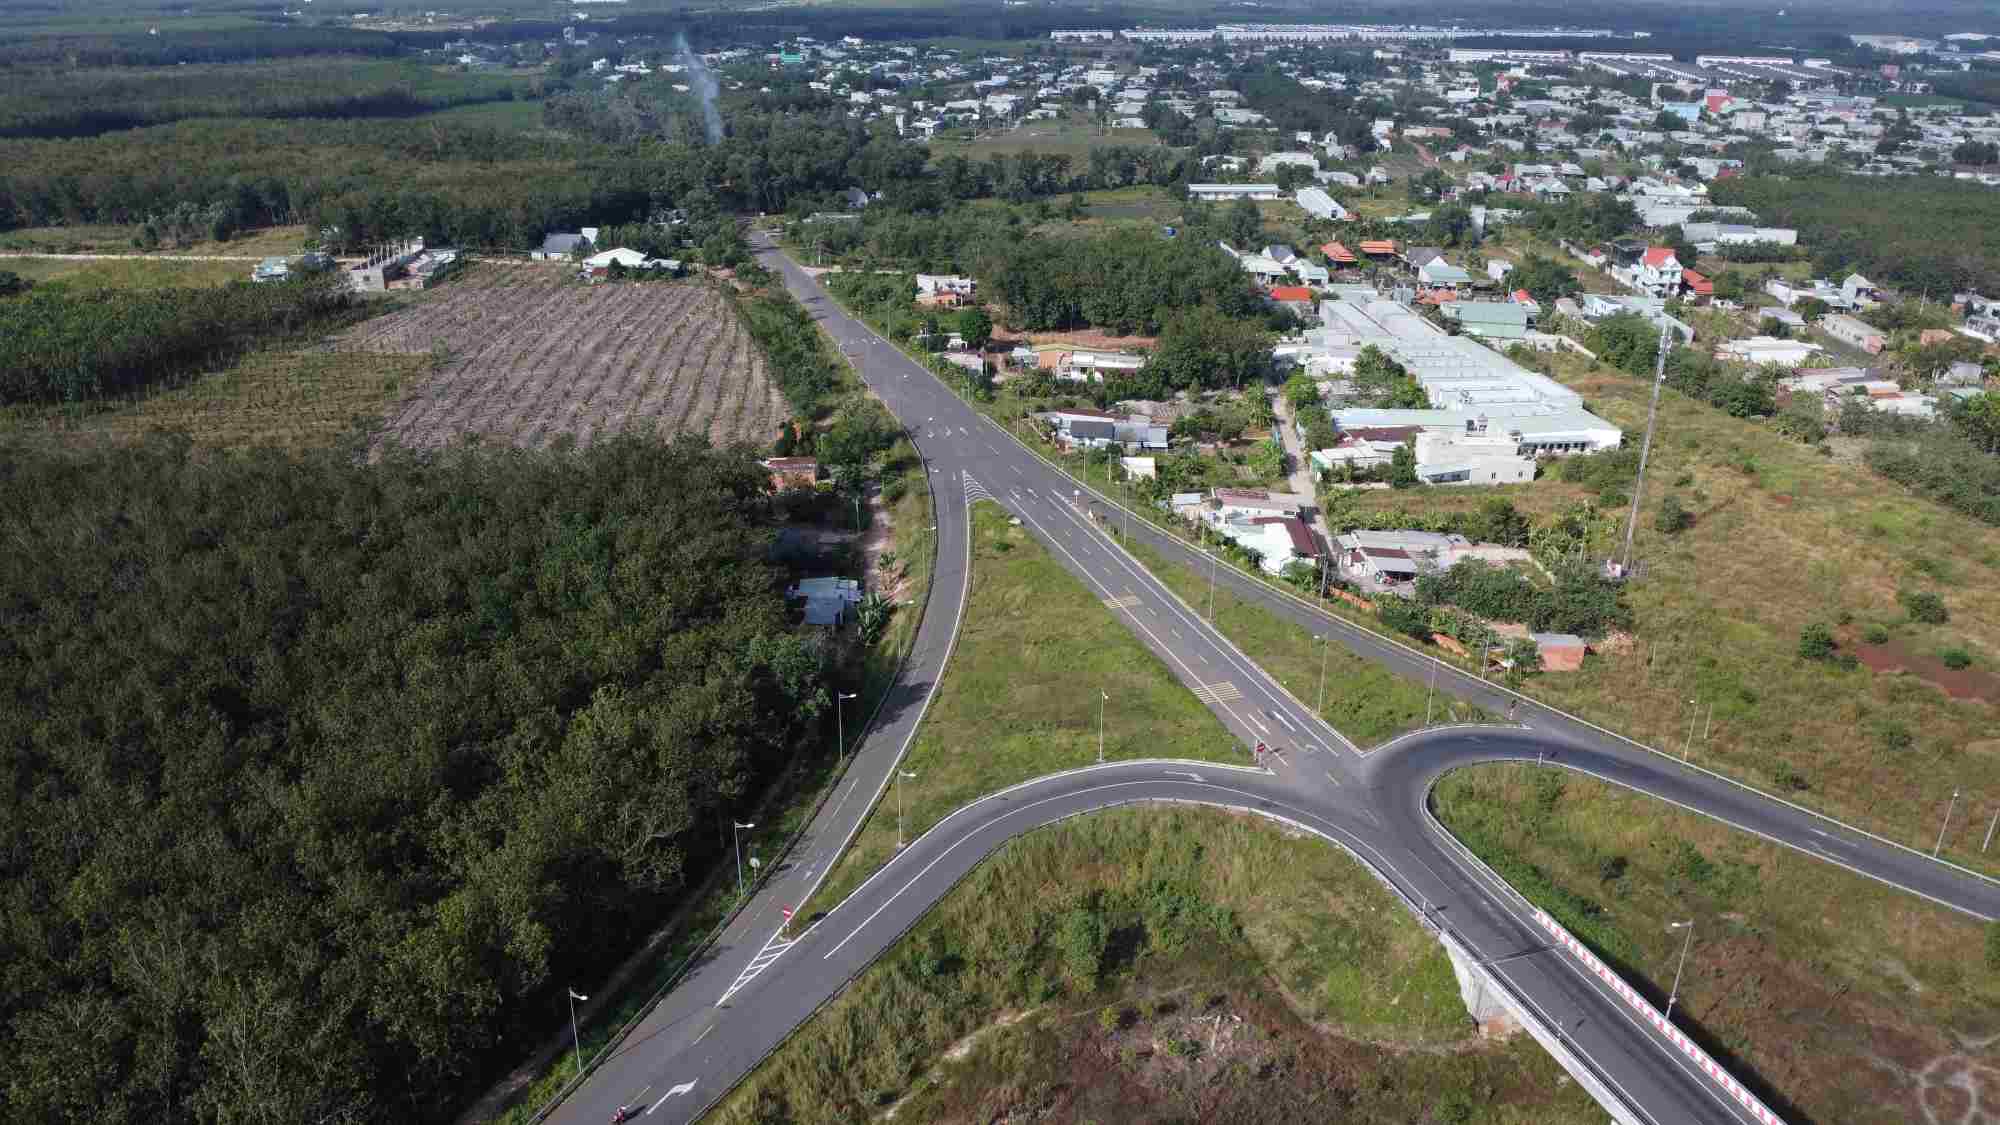 Điểm cuối hiện nay của đường Hồ Chí Minh đoạn qua Bình Phước là ở phường Thành Tâm, thị xã Chơ Thành, tỉnh Bình Phước.